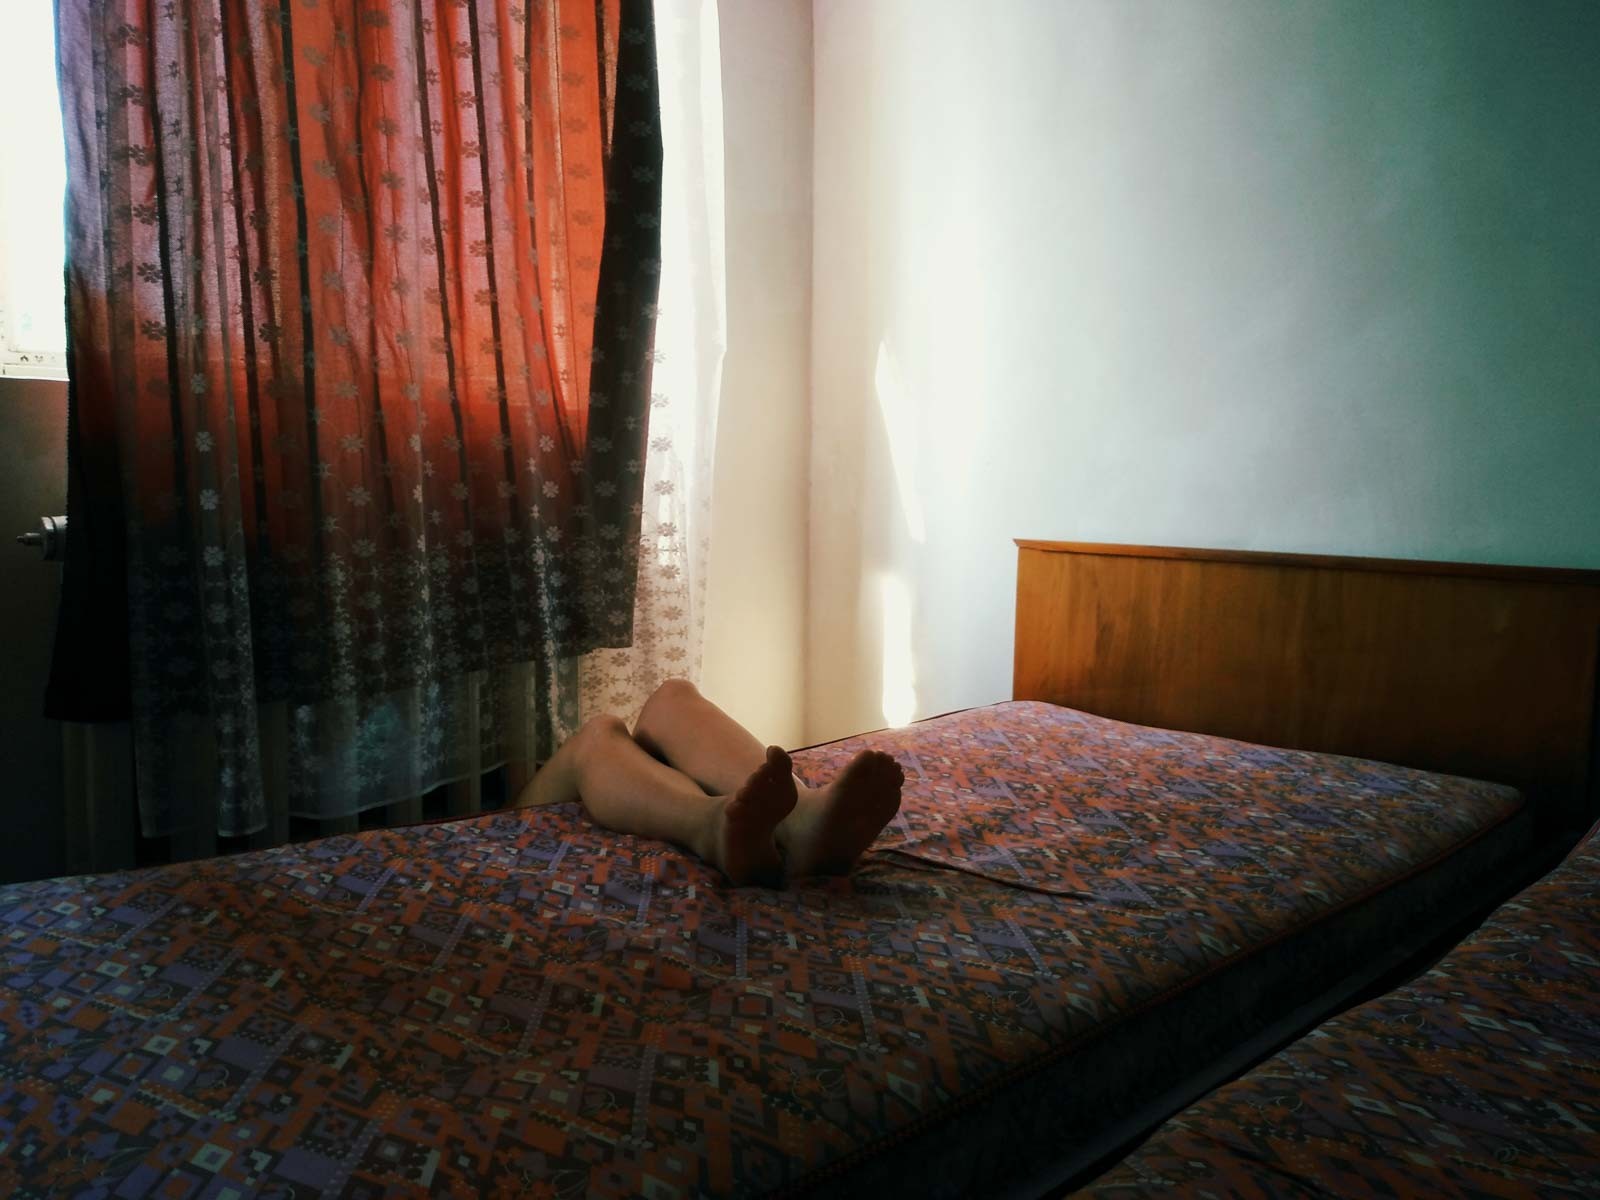 Категория Мобильный фотограф. Из серии Красота в заброшенных домах, Грузия. Автор Еллена Карабаки